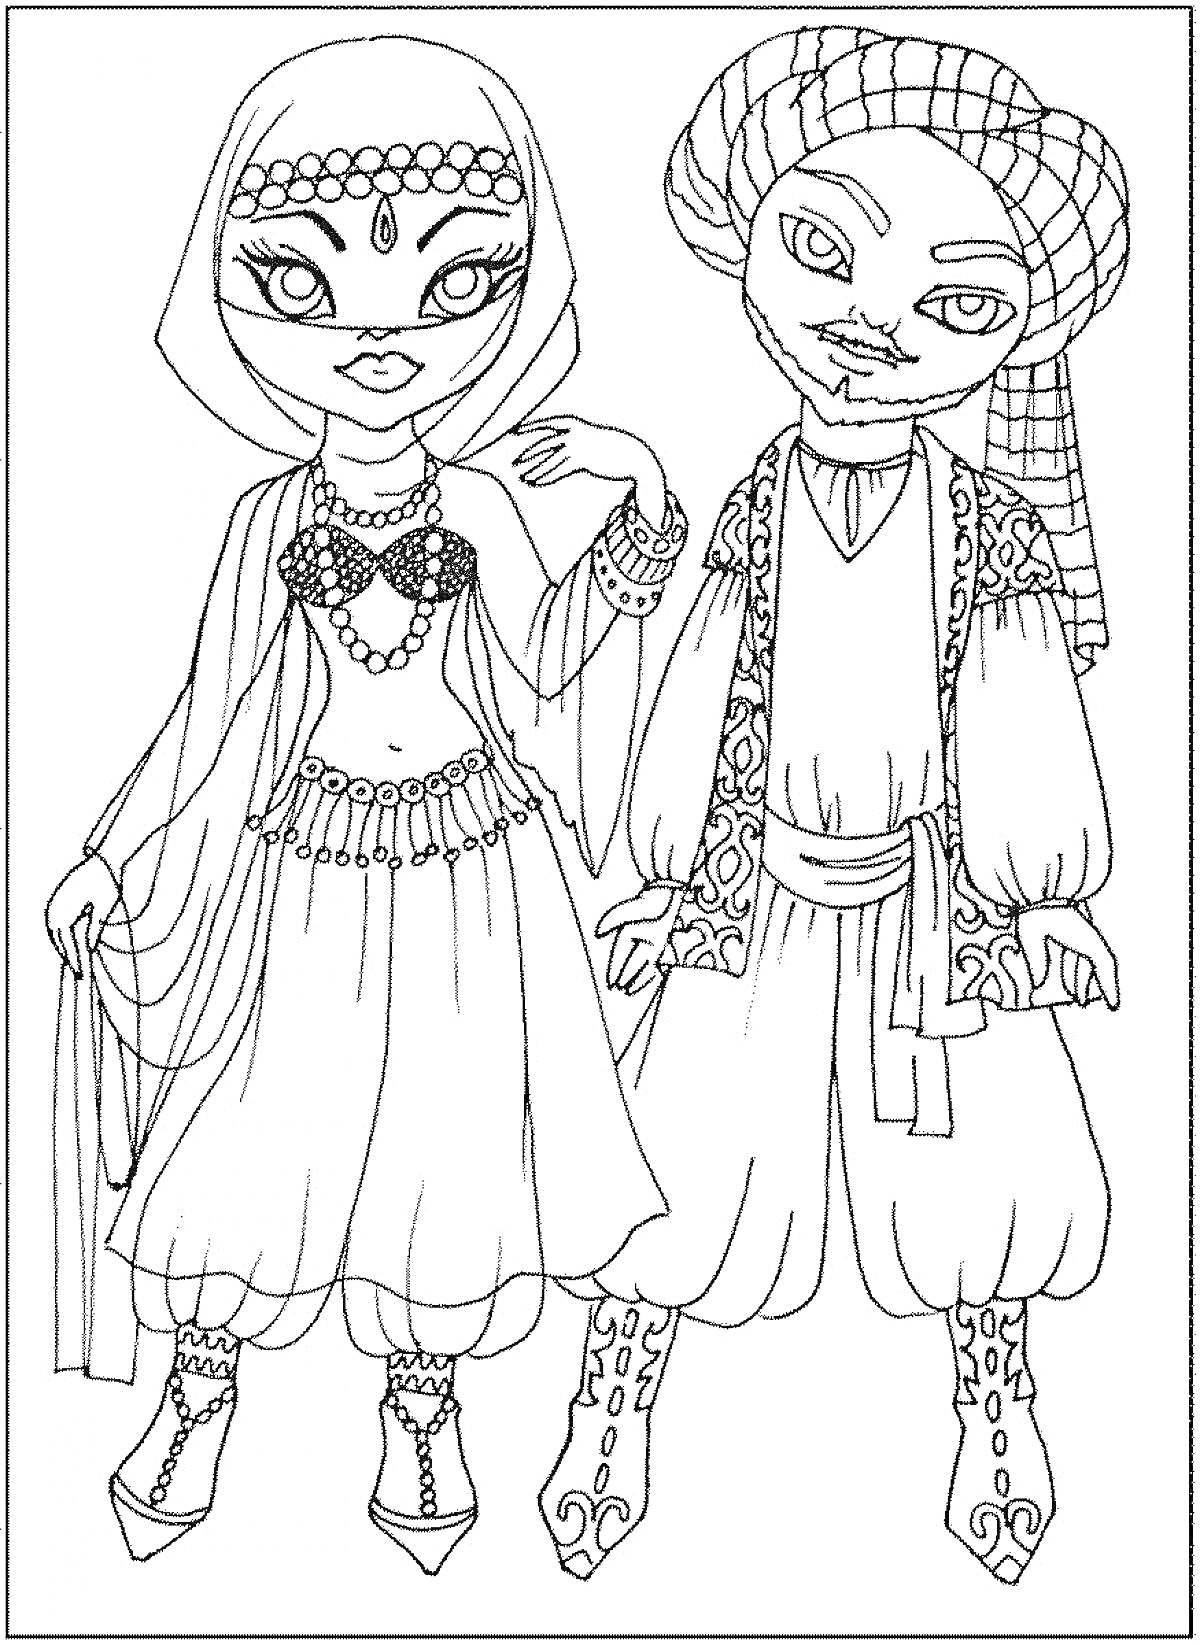 Дети в традиционных восточных костюмах, девочка в платье с украшениями и платком, мальчик в рубашке, шароварах и тюрбане